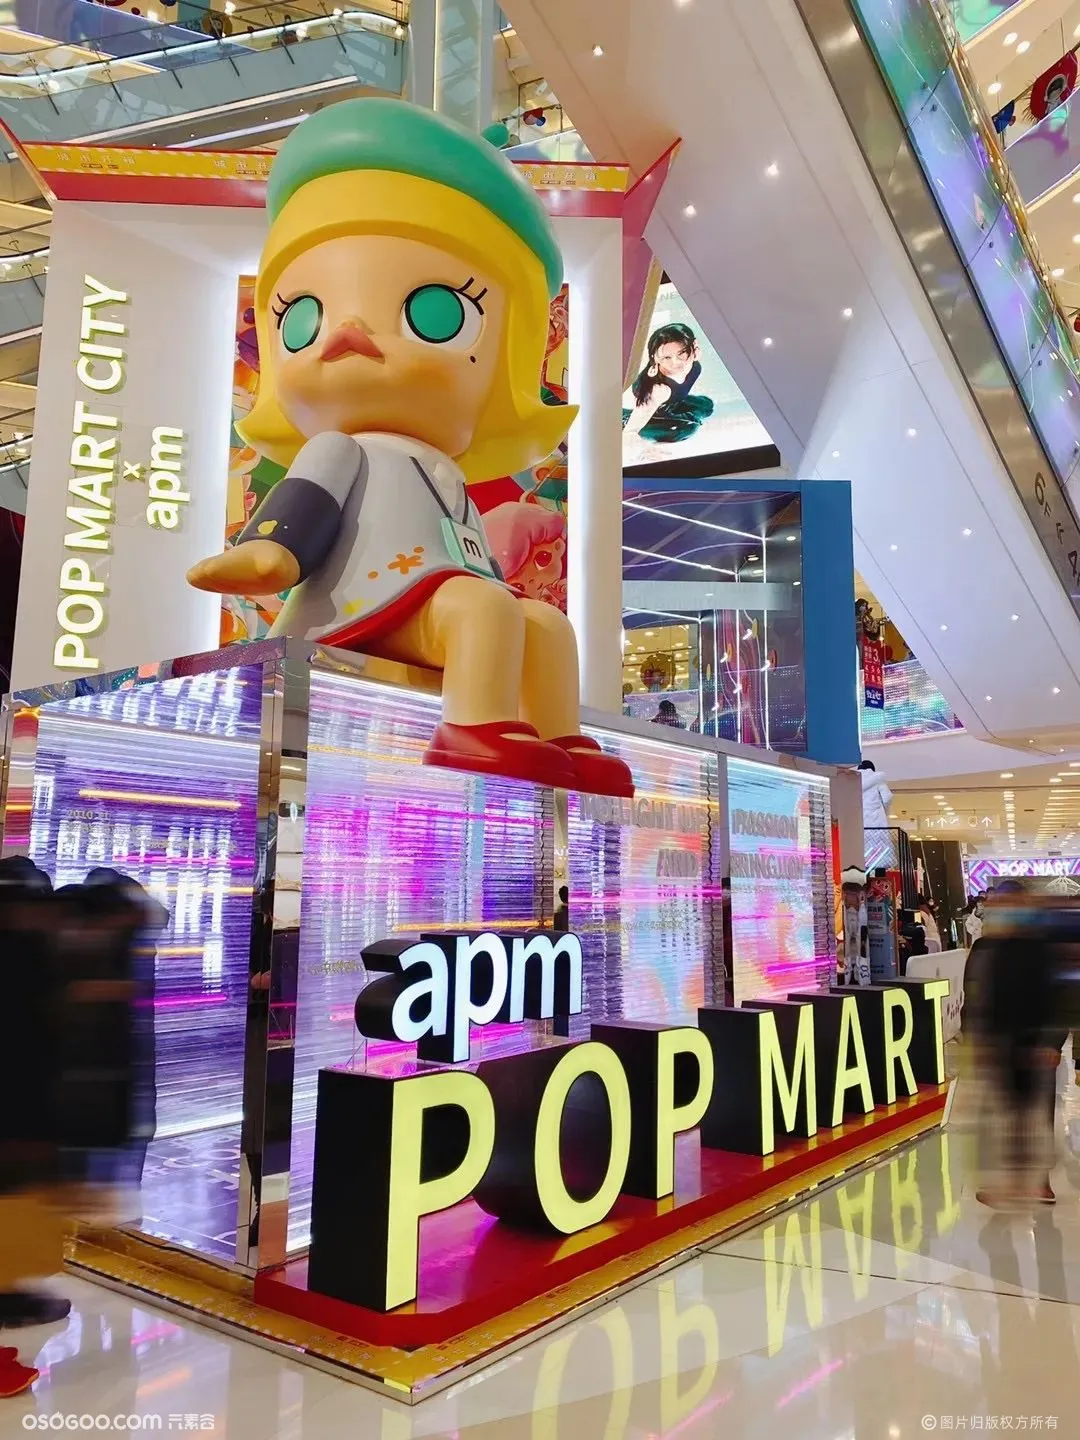 北京apm x POP MART【城市开箱】全国首展